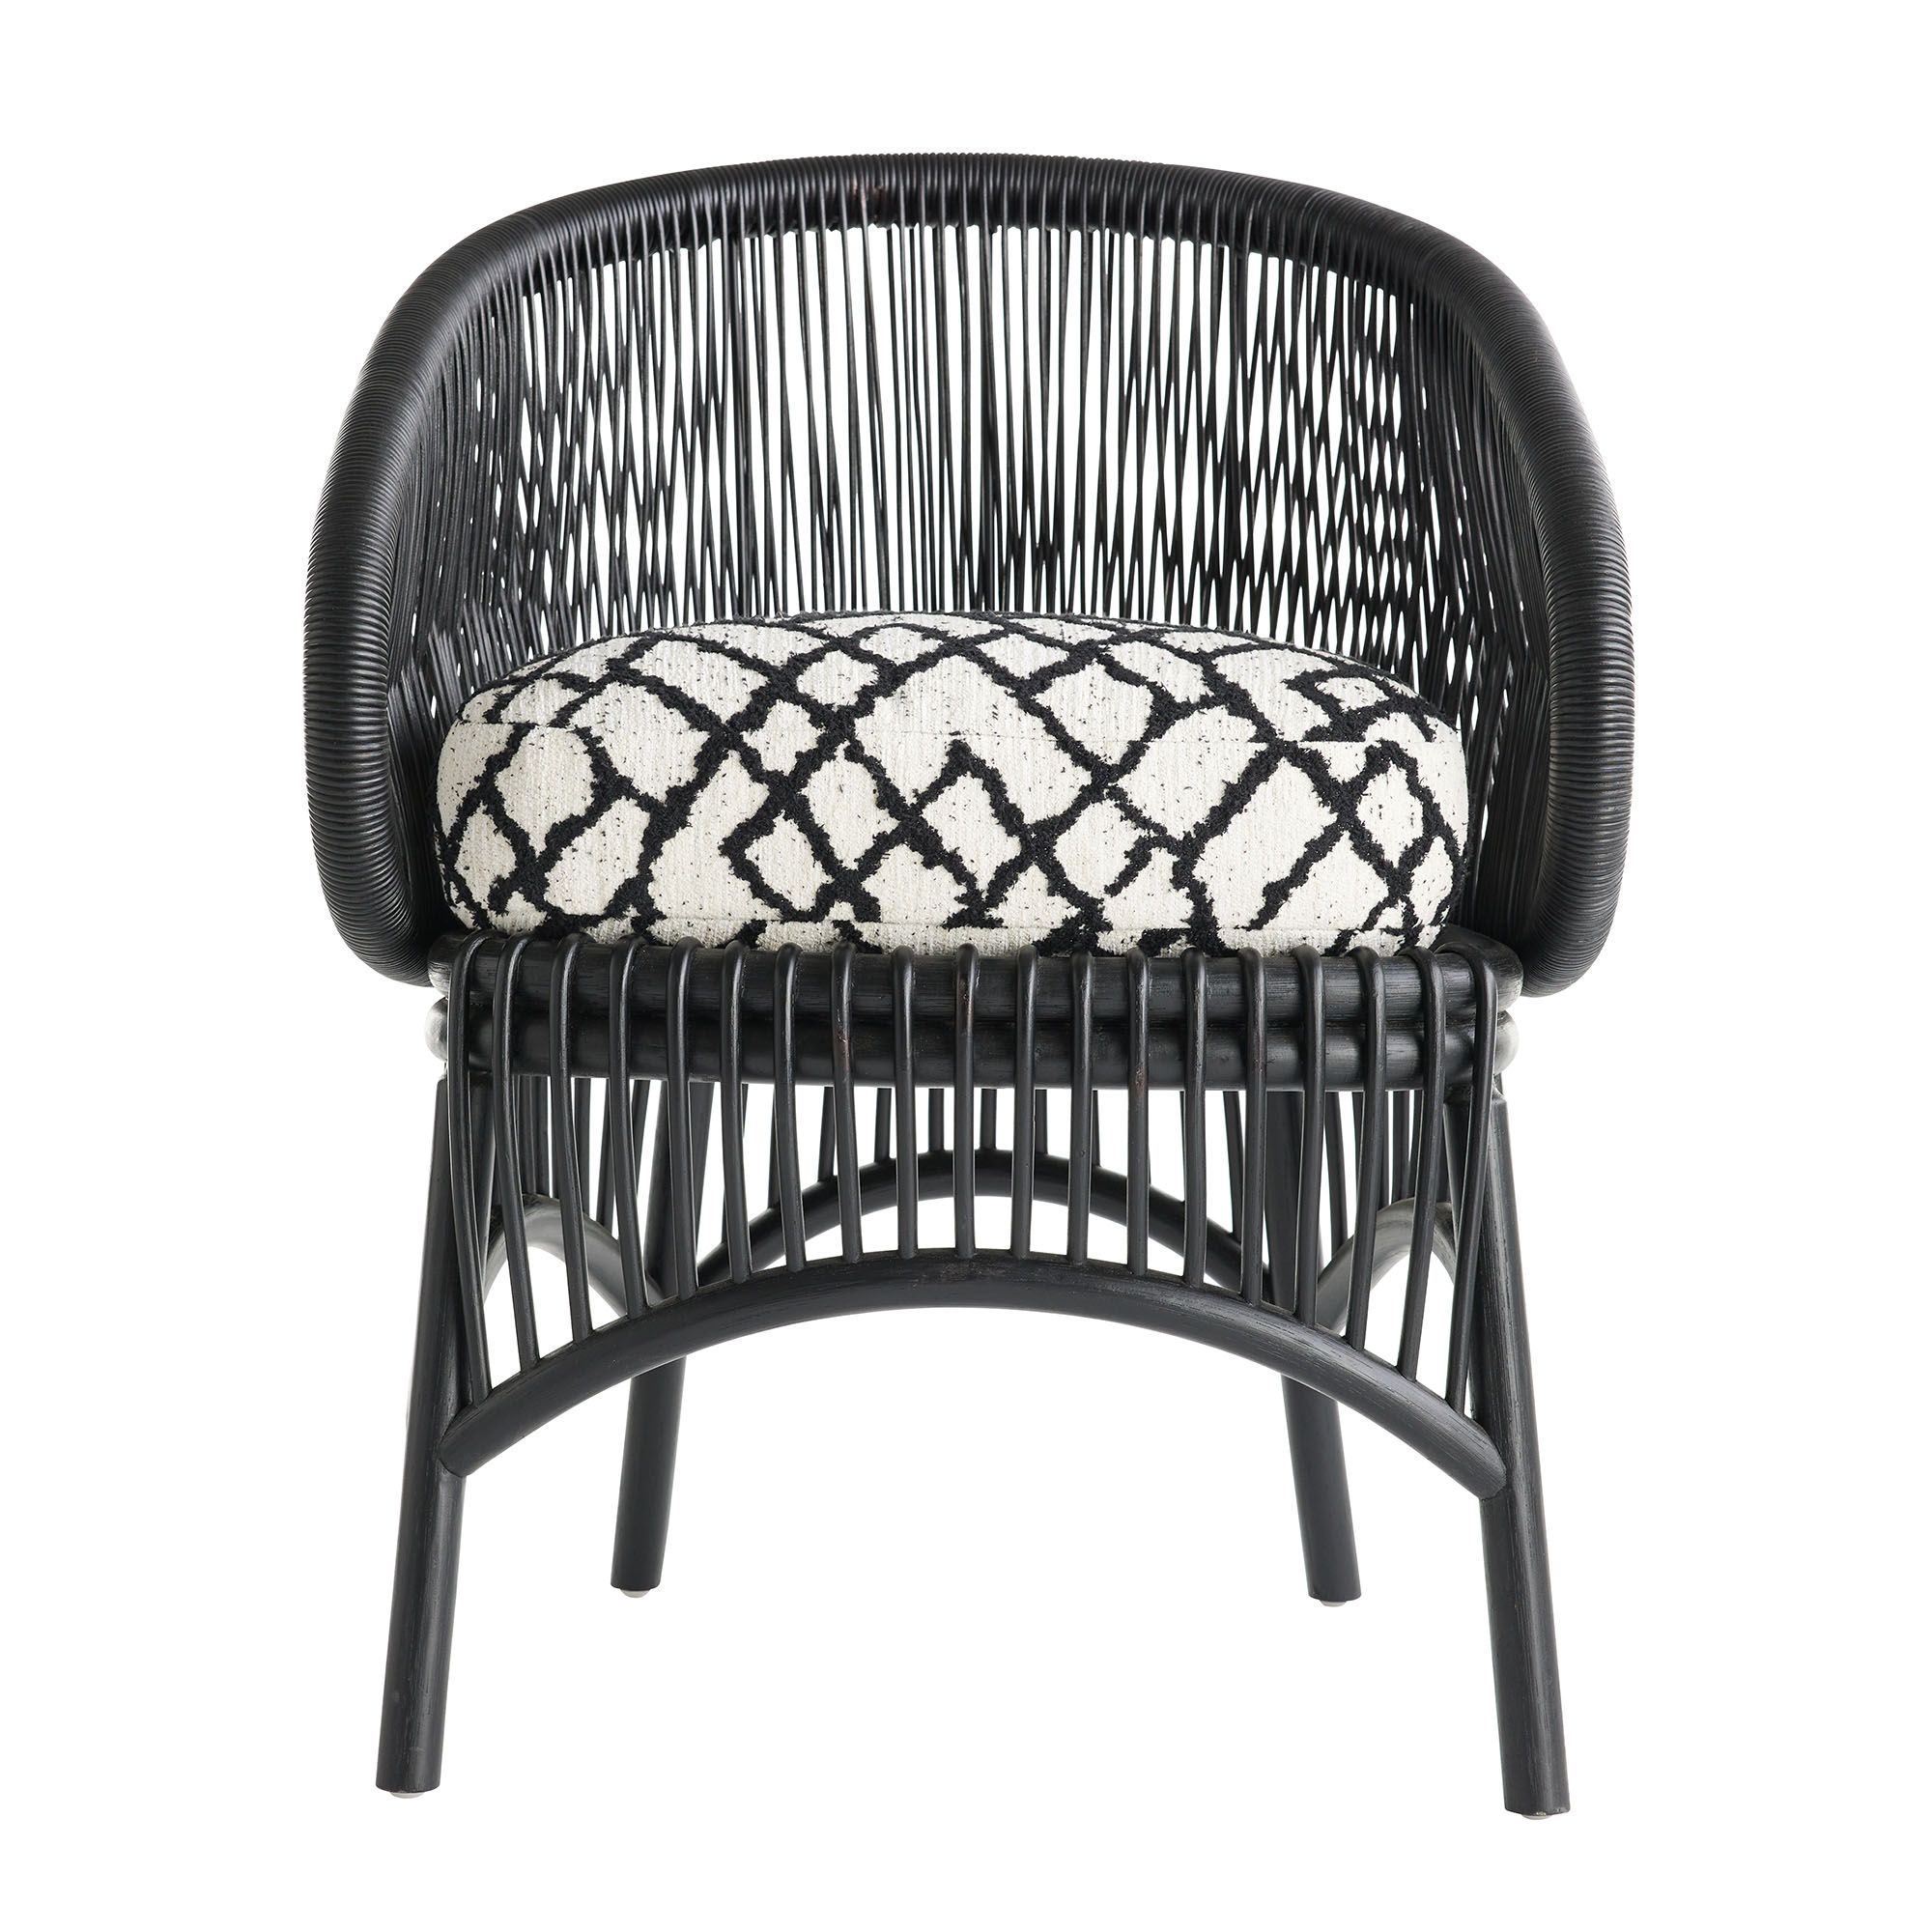 Купить Кресло Landry Accent Chair в интернет-магазине roooms.ru